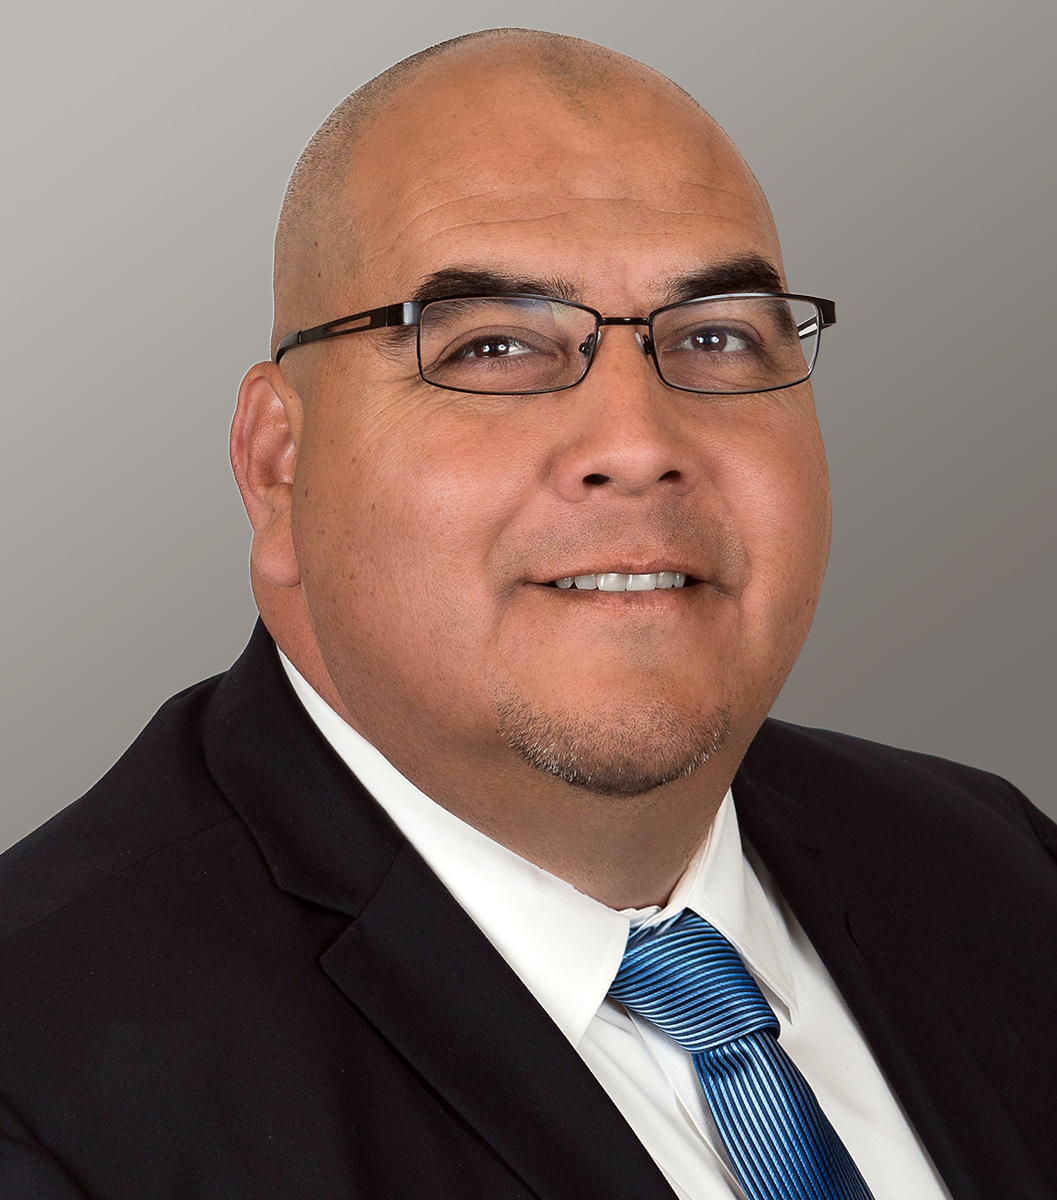 Gilbert Contreras has been named as the 15th president of San Bernardino Valley College. (Courtesy of San Bernardino Community College District)